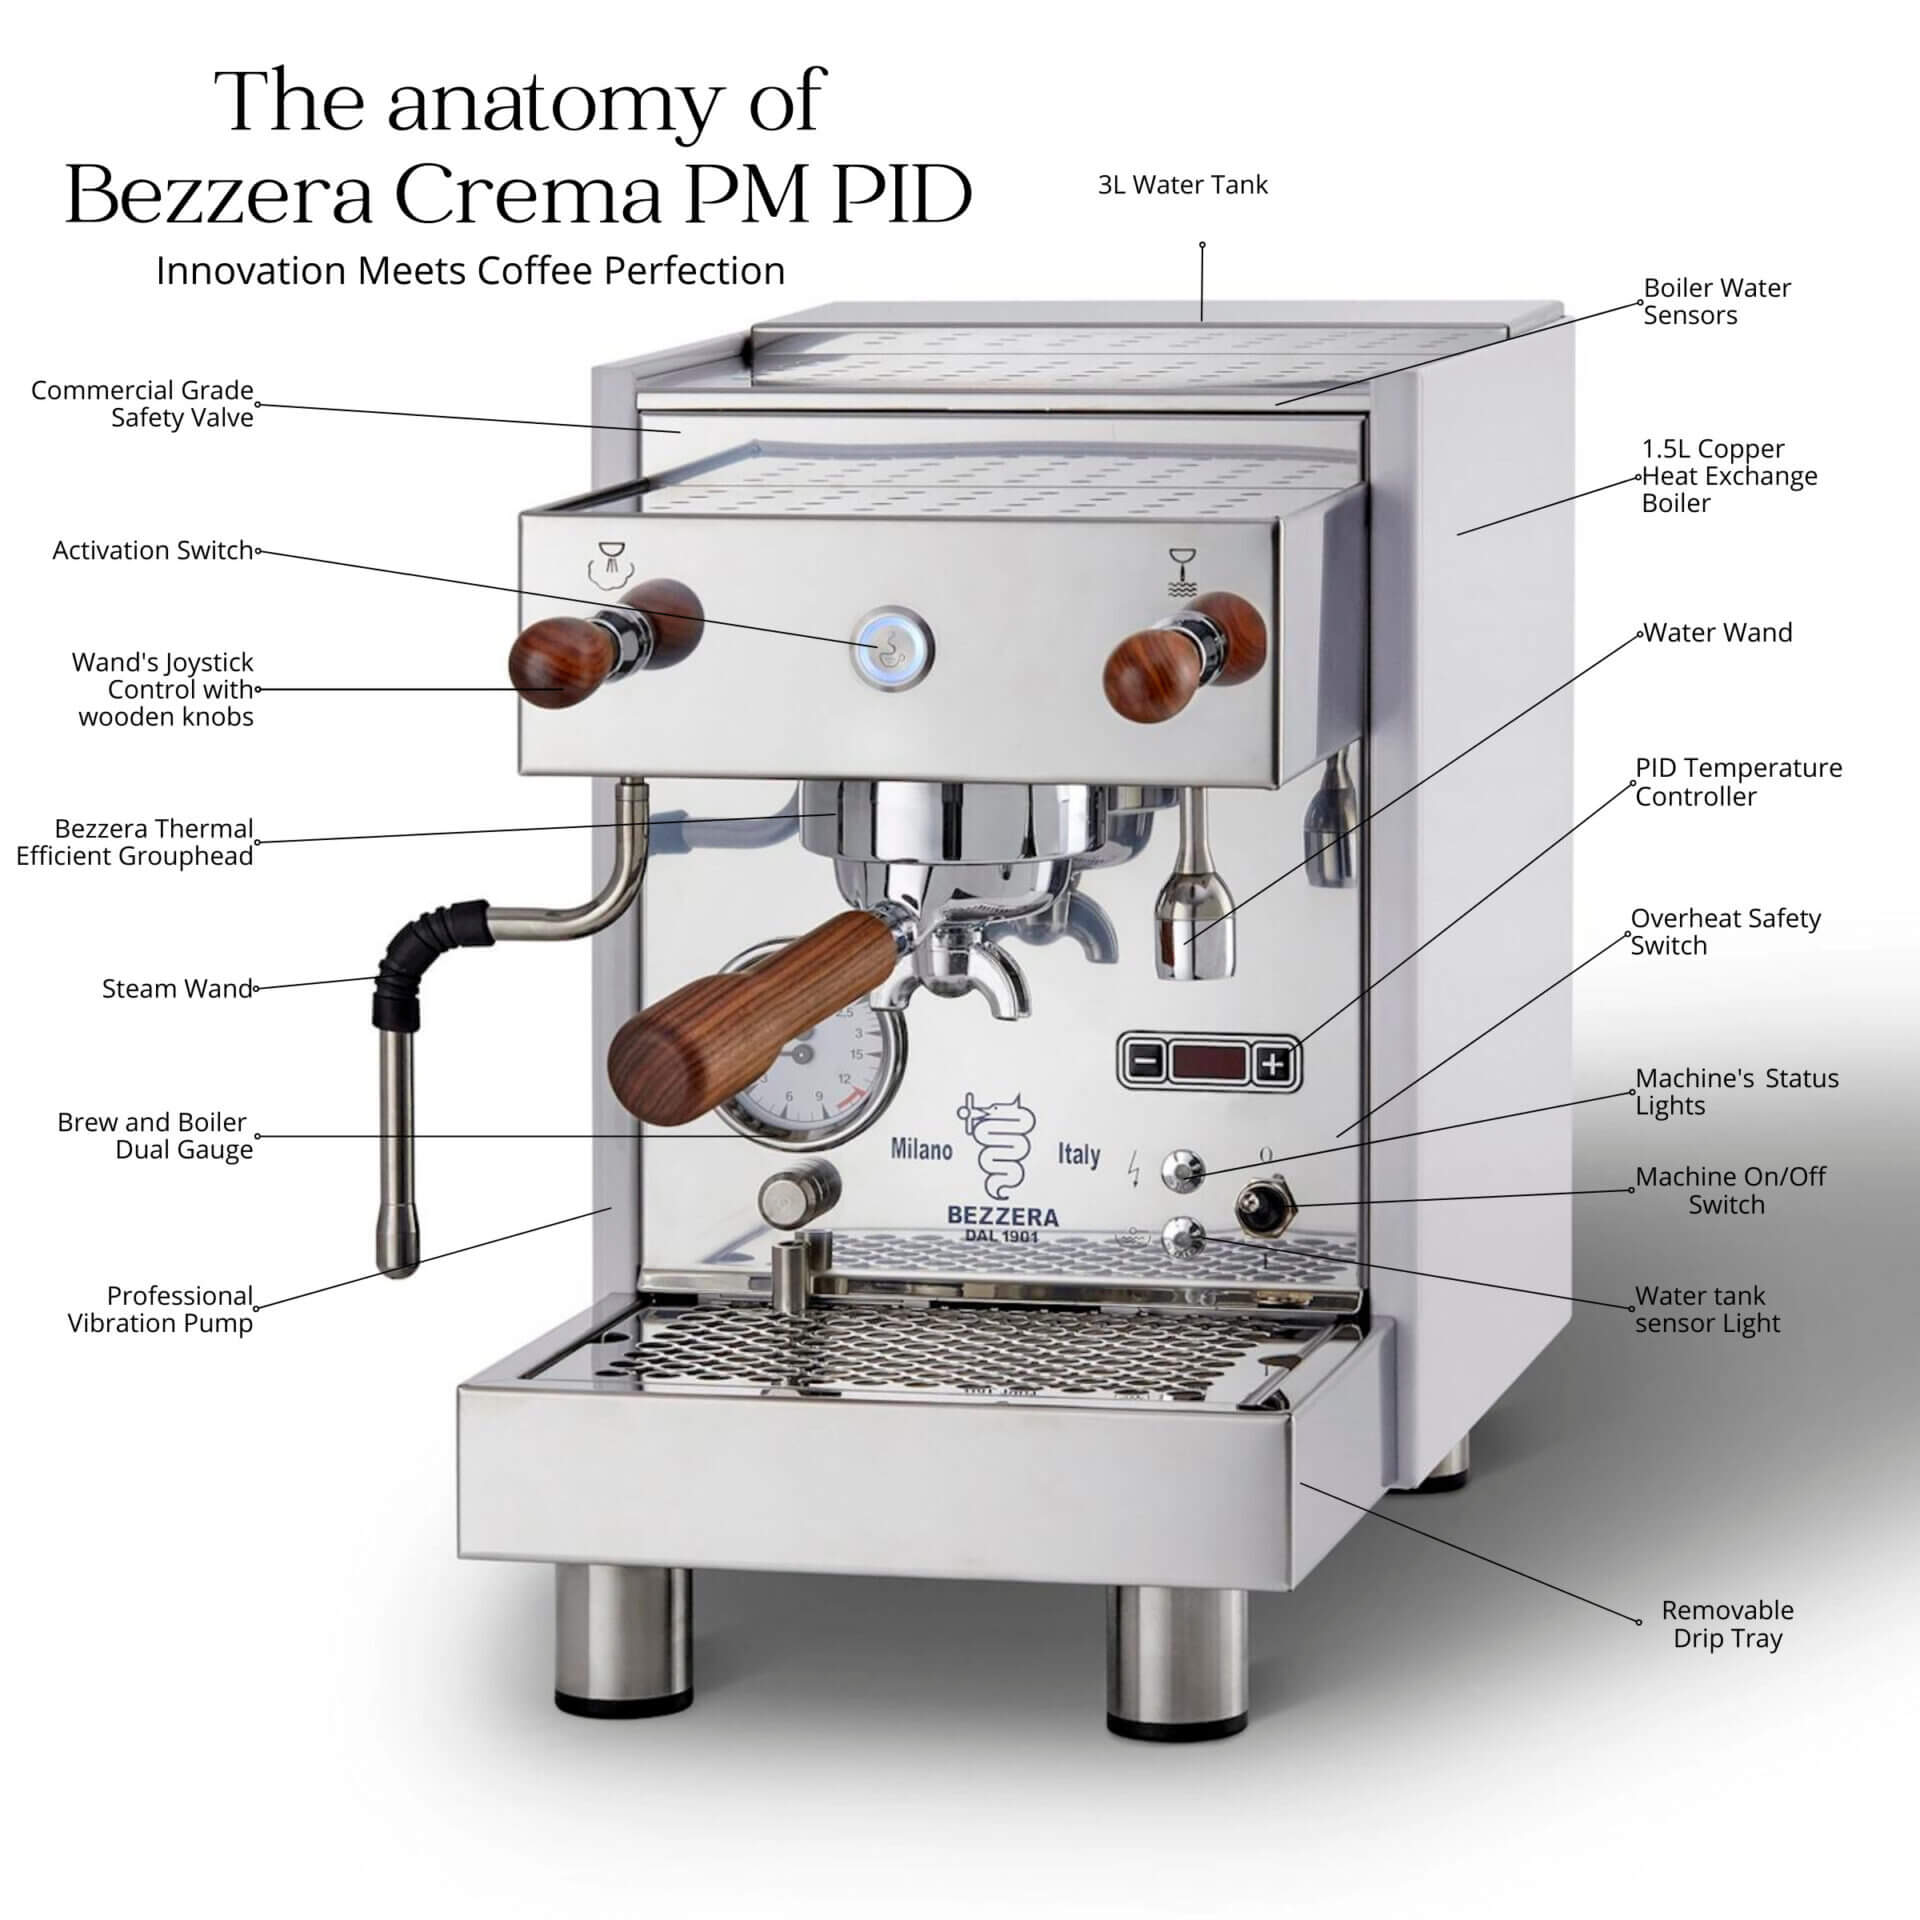 Bezzera Crema PM PID Anatomy Coffee Machine